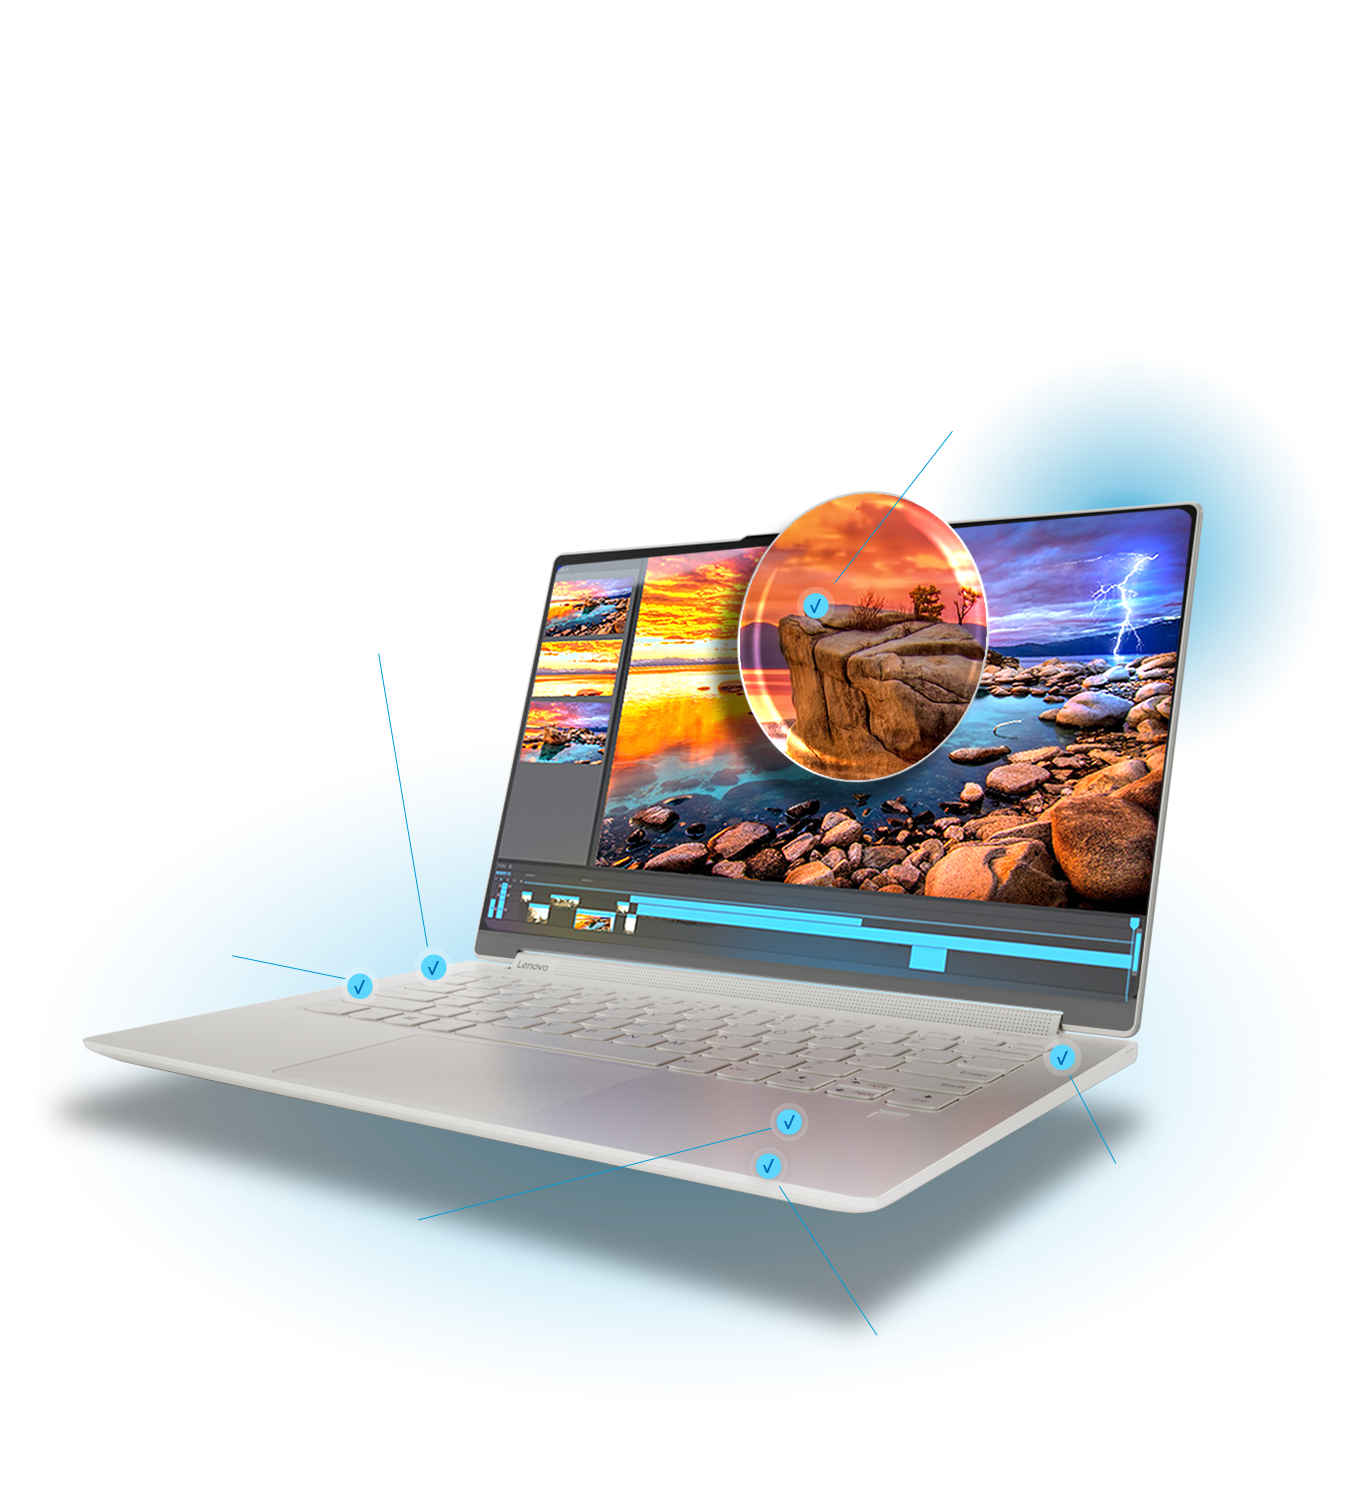 Le portable Yoga 9i ouvert, met en valeur diverses fonctionnalités : affichage immersif, Intel WiFi 6, Thunderbolt™ 4, etc.